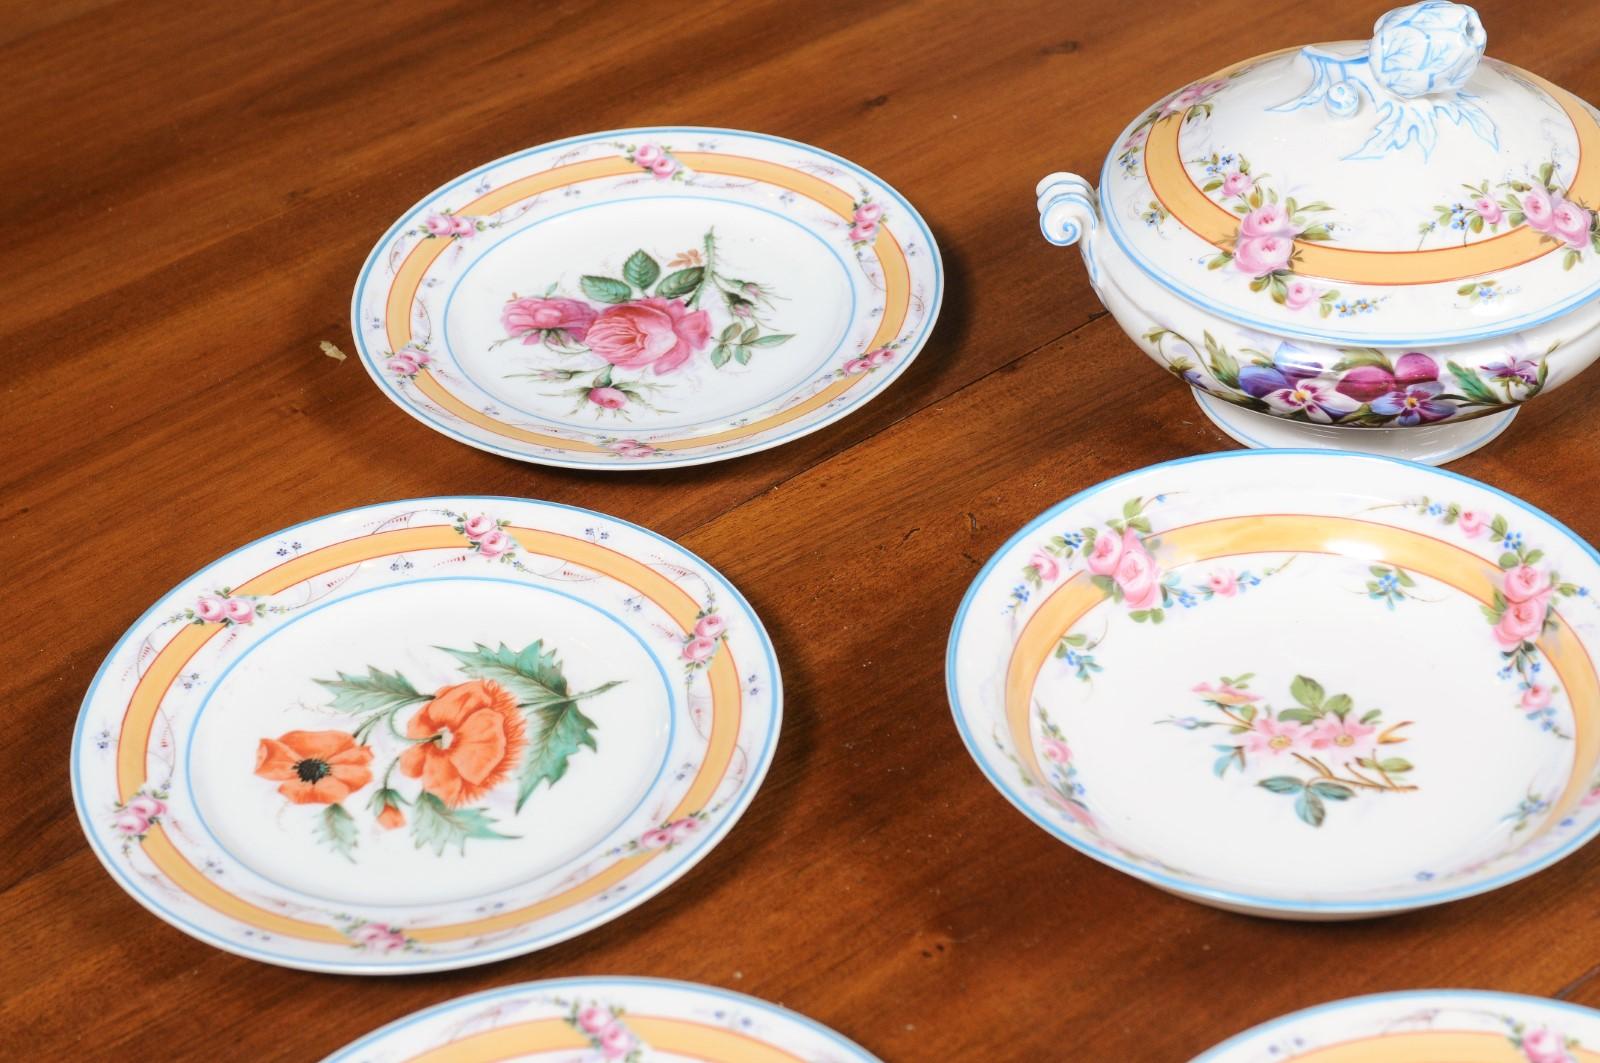 Porcelaine de Paris 19th Century Floral Dish Set with Casserole and Plates 4